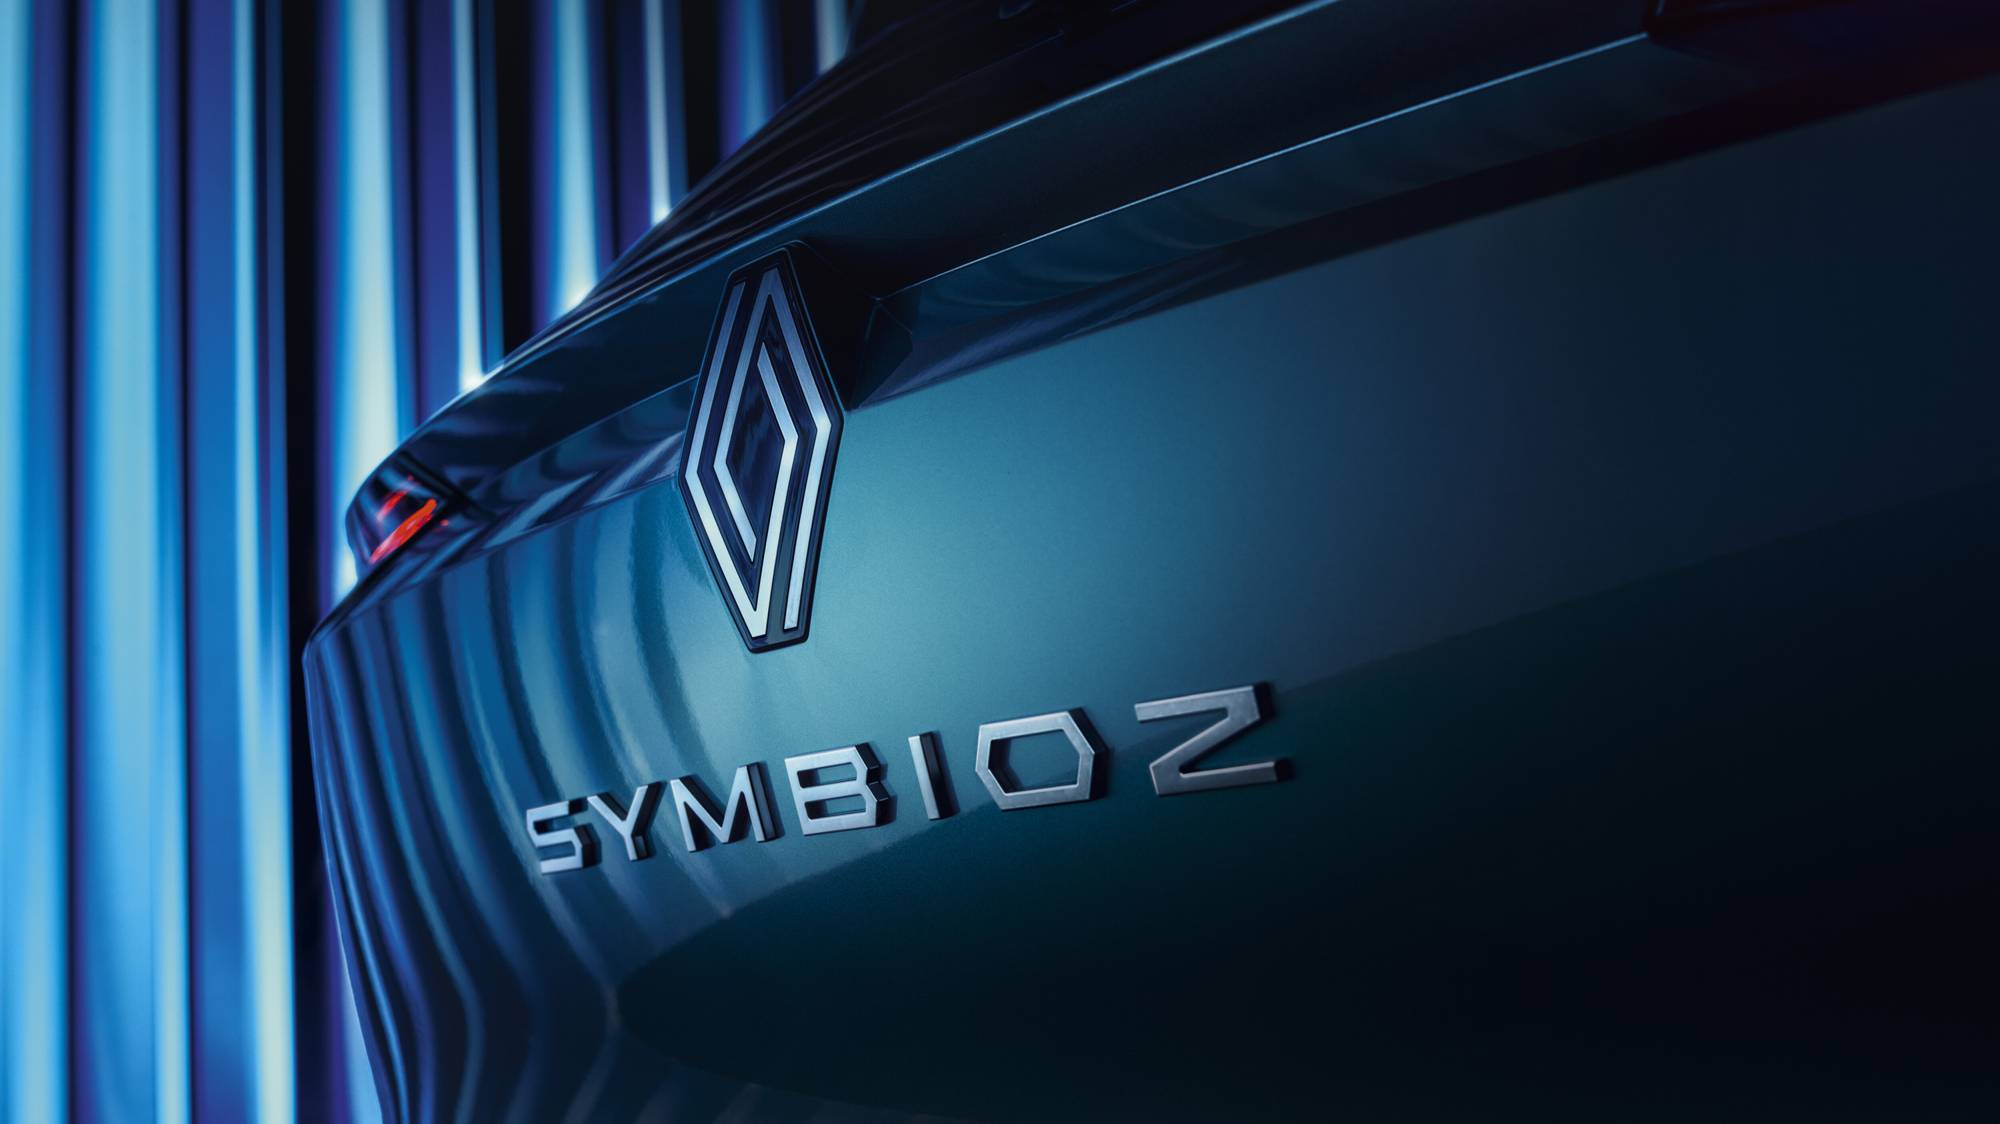 L’histoire derrière le patronyme du futur SUV Renault Symbioz